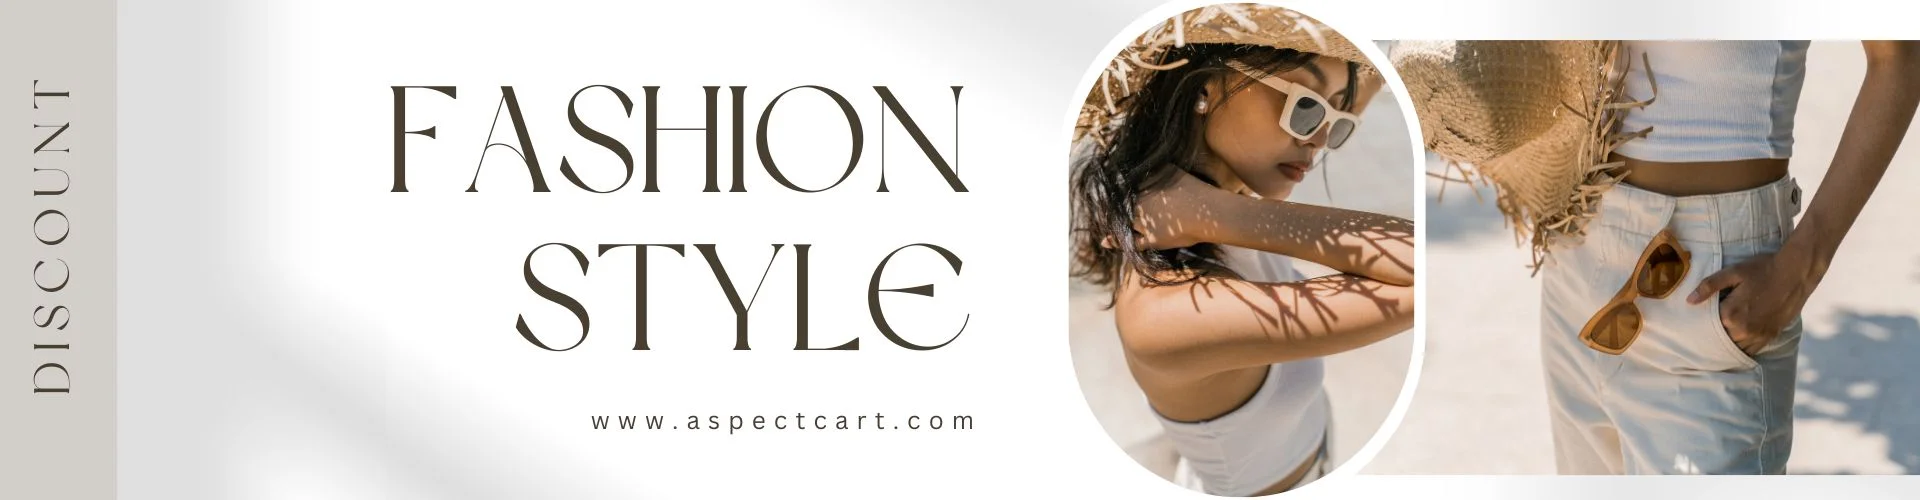 Banner för en online modebutik med moderna kläder och accessoarer